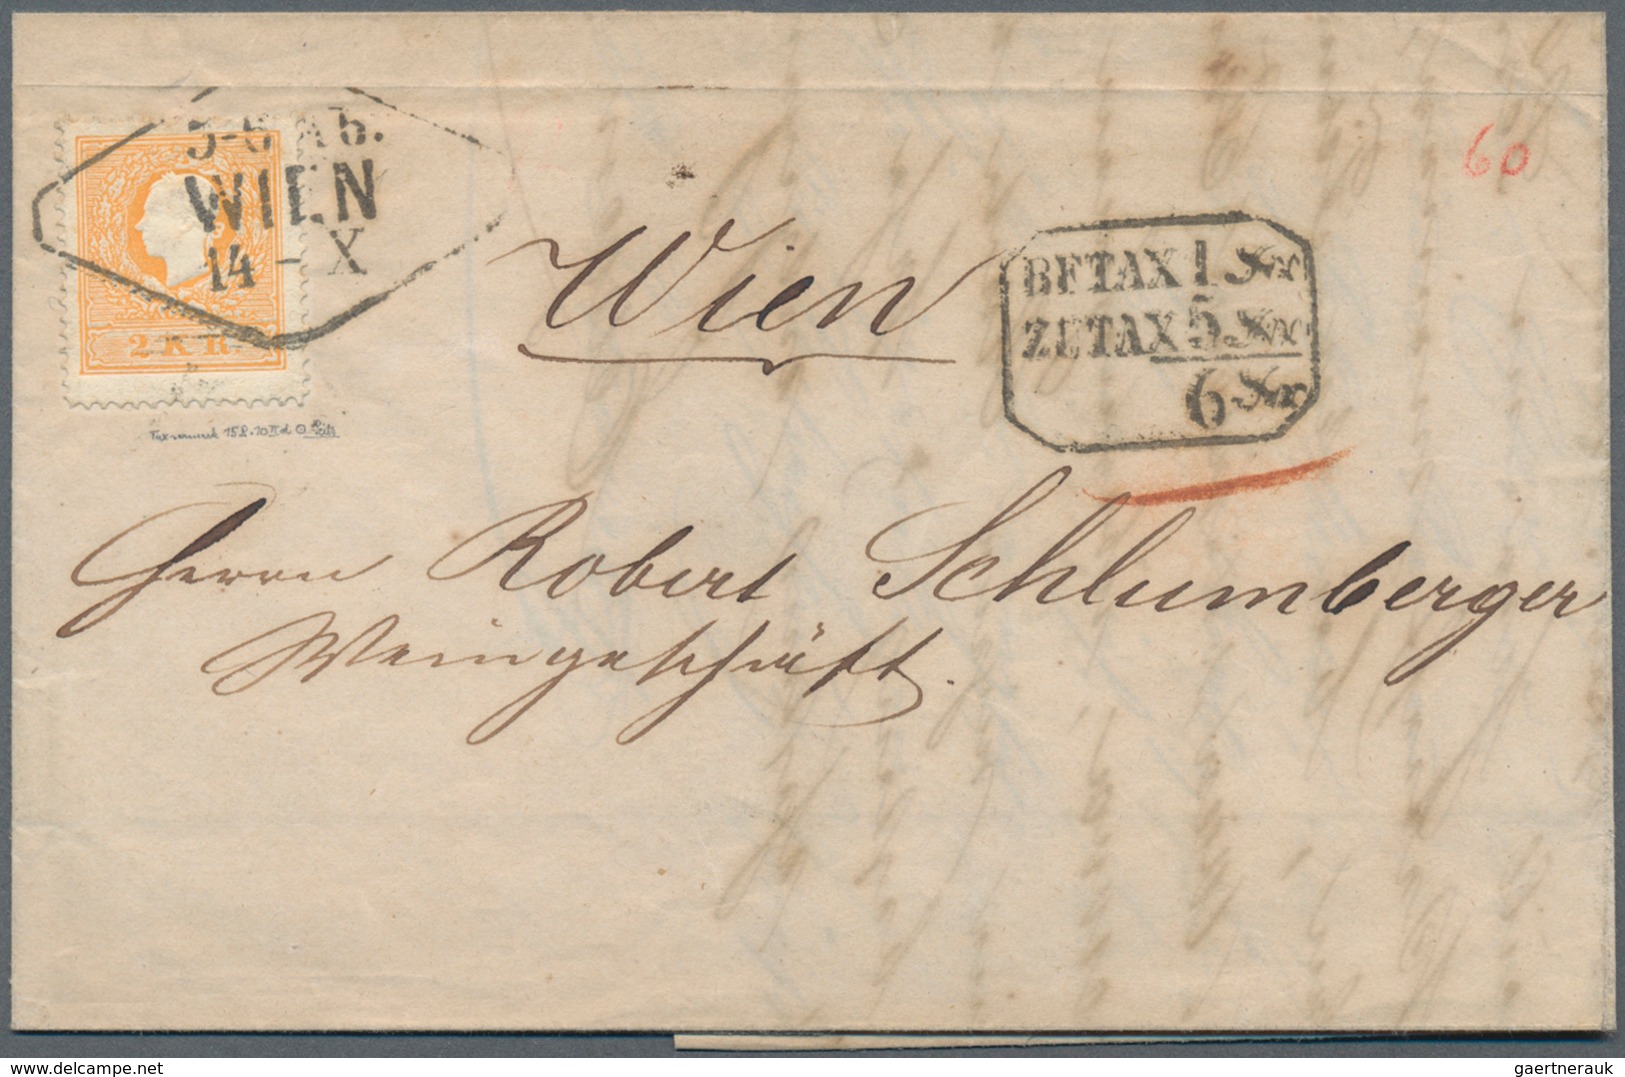 Österreich: 1861, Brief Aus Semlin 10 Okt., Frankiert Mit Außergewöhnlich Farbtiefer Und Gut Gezähnt - Gebraucht